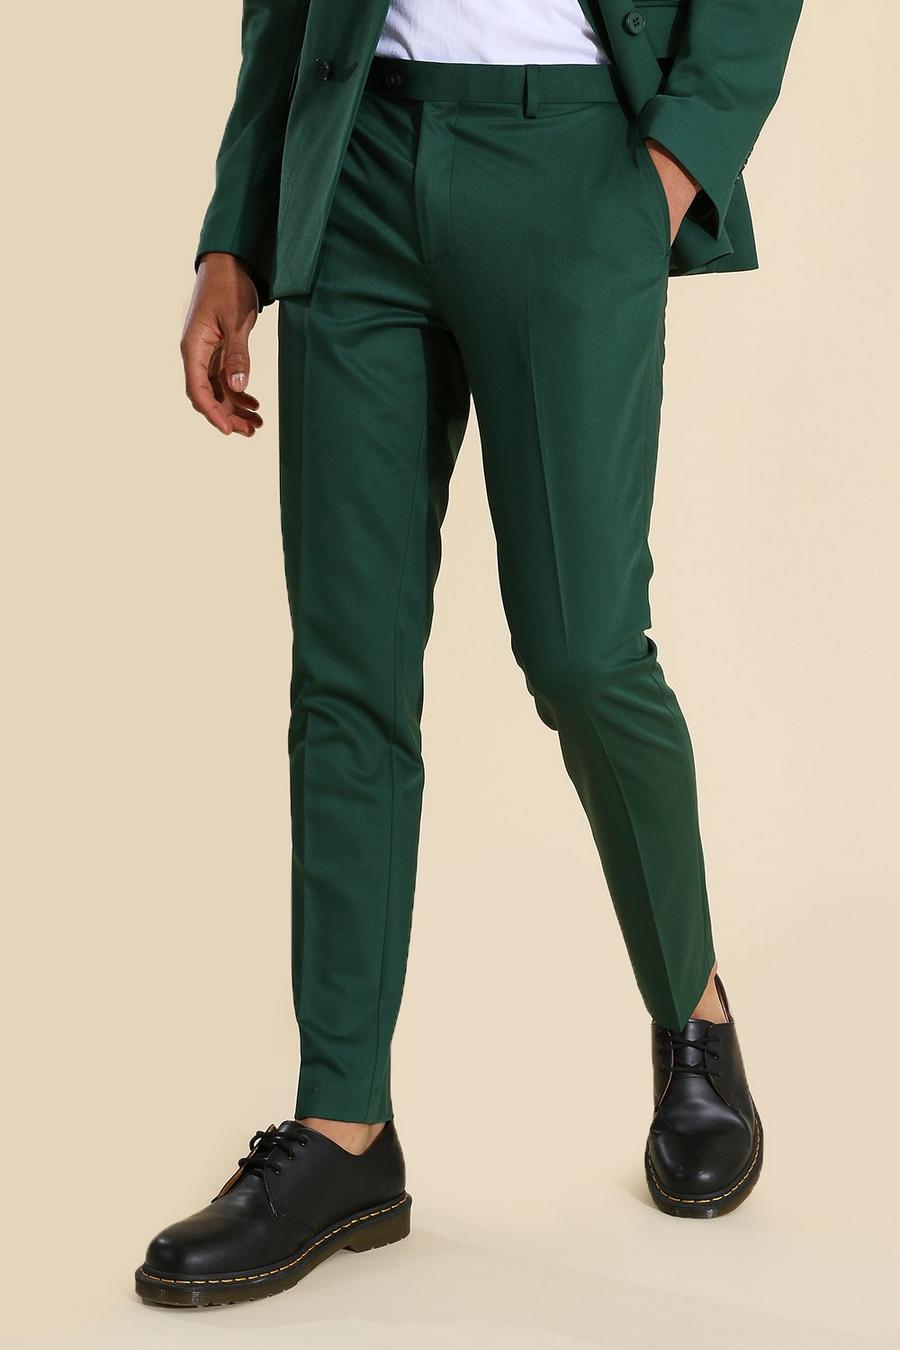 Pantaloni da completo Skinny verdi, Green gerde